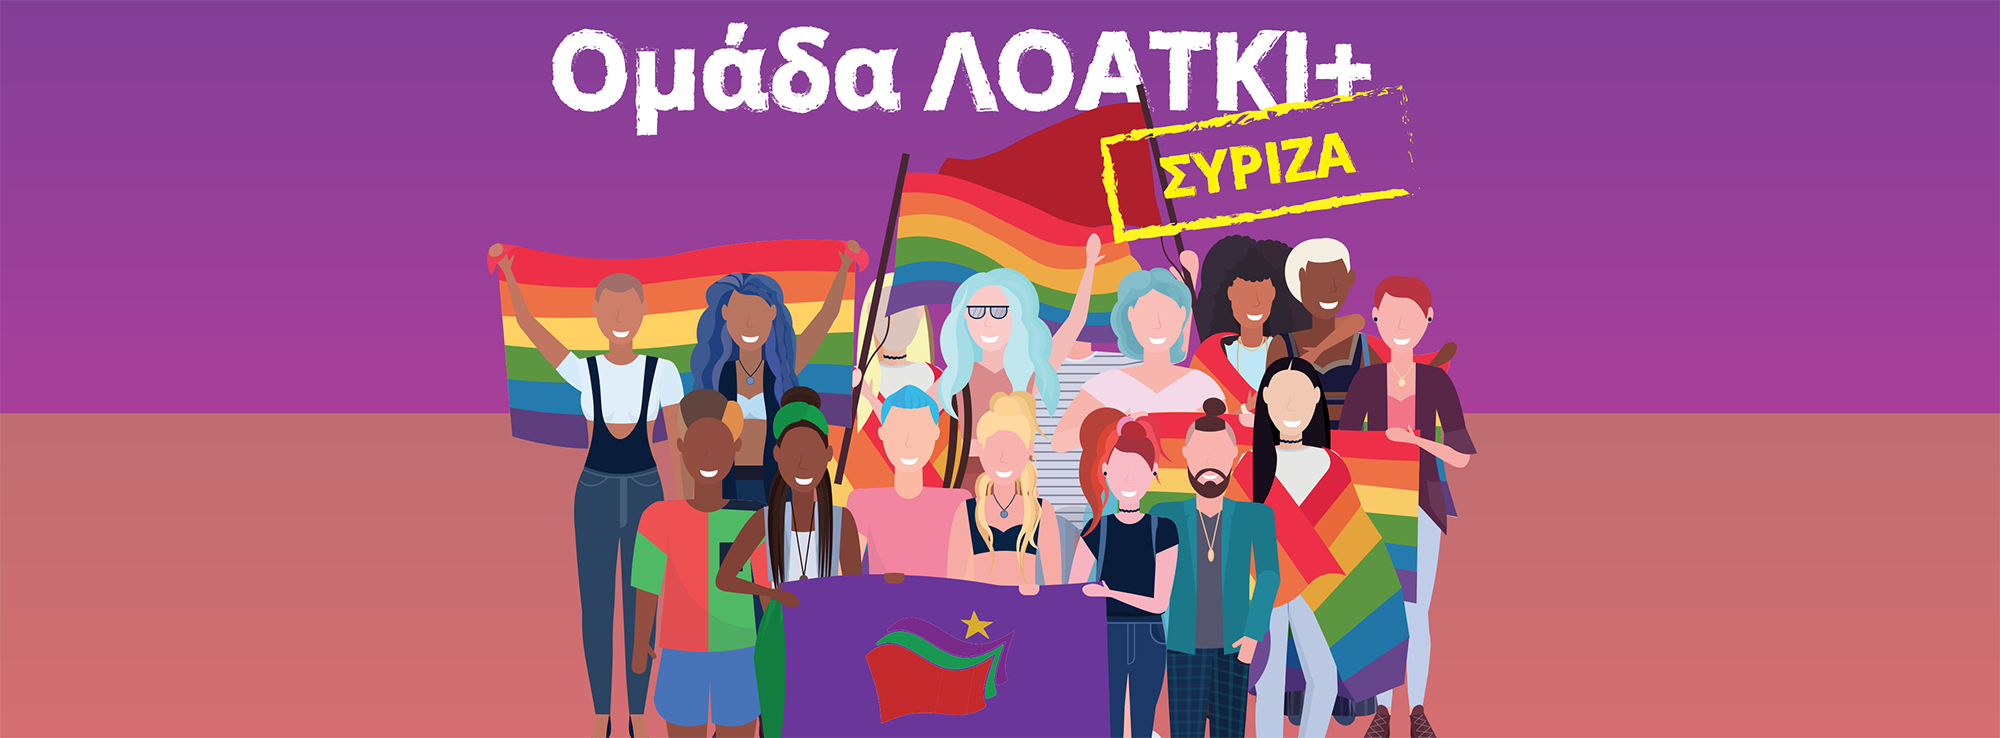 Ανακοίνωση της ομάδας ΛΟΑΤΚΙ+ ΣΥΡΙΖΑ για τη μέρα της γυναίκας